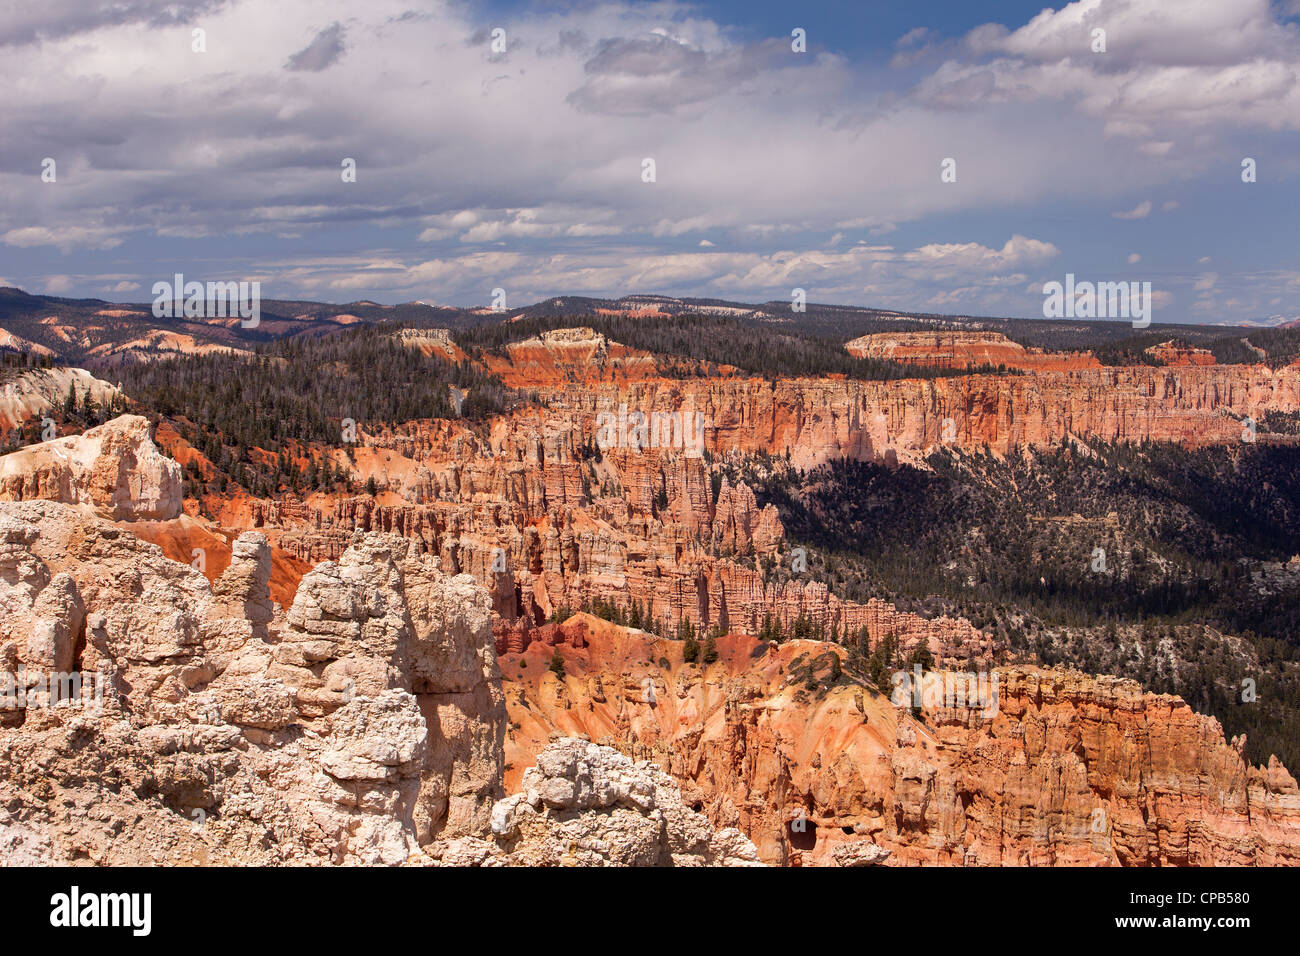 Bryce Canyon National Park, Utah. Sandstein-Formationen in der Wüste. Foto neu zu entfachen. Stockfoto